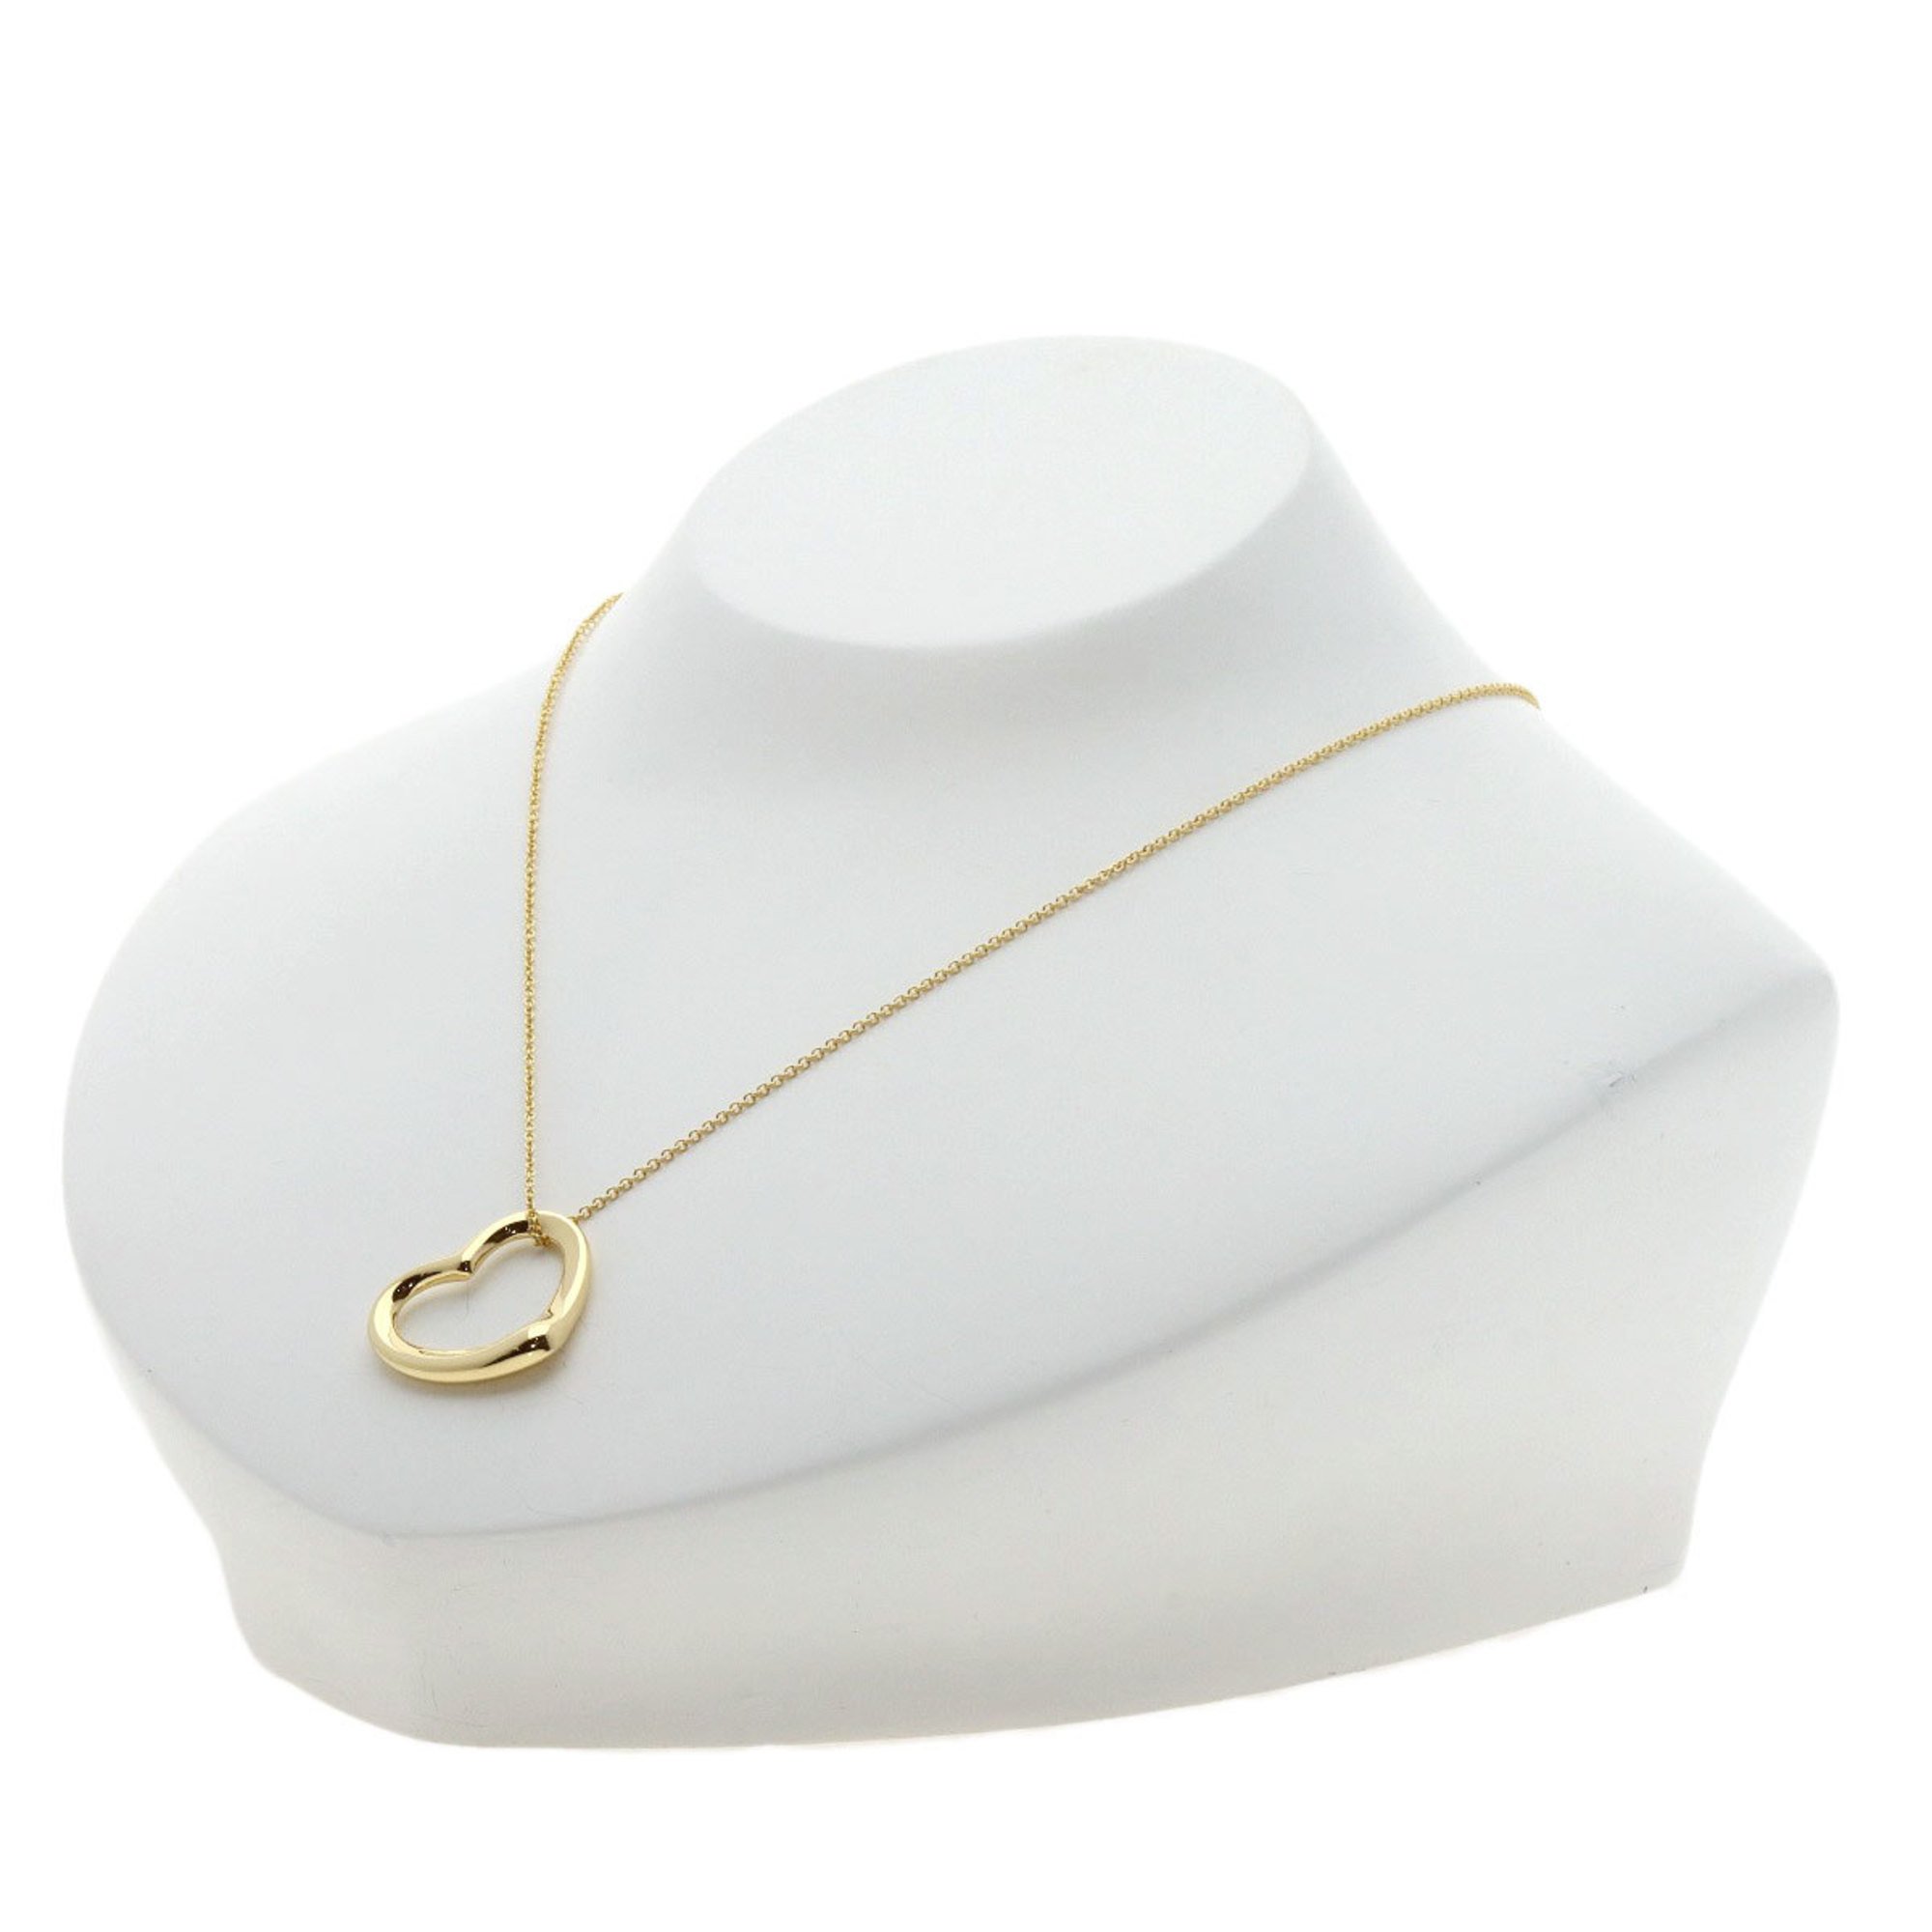 Tiffany Heart Necklace, 18K Yellow Gold, Women's, TIFFANY&Co.